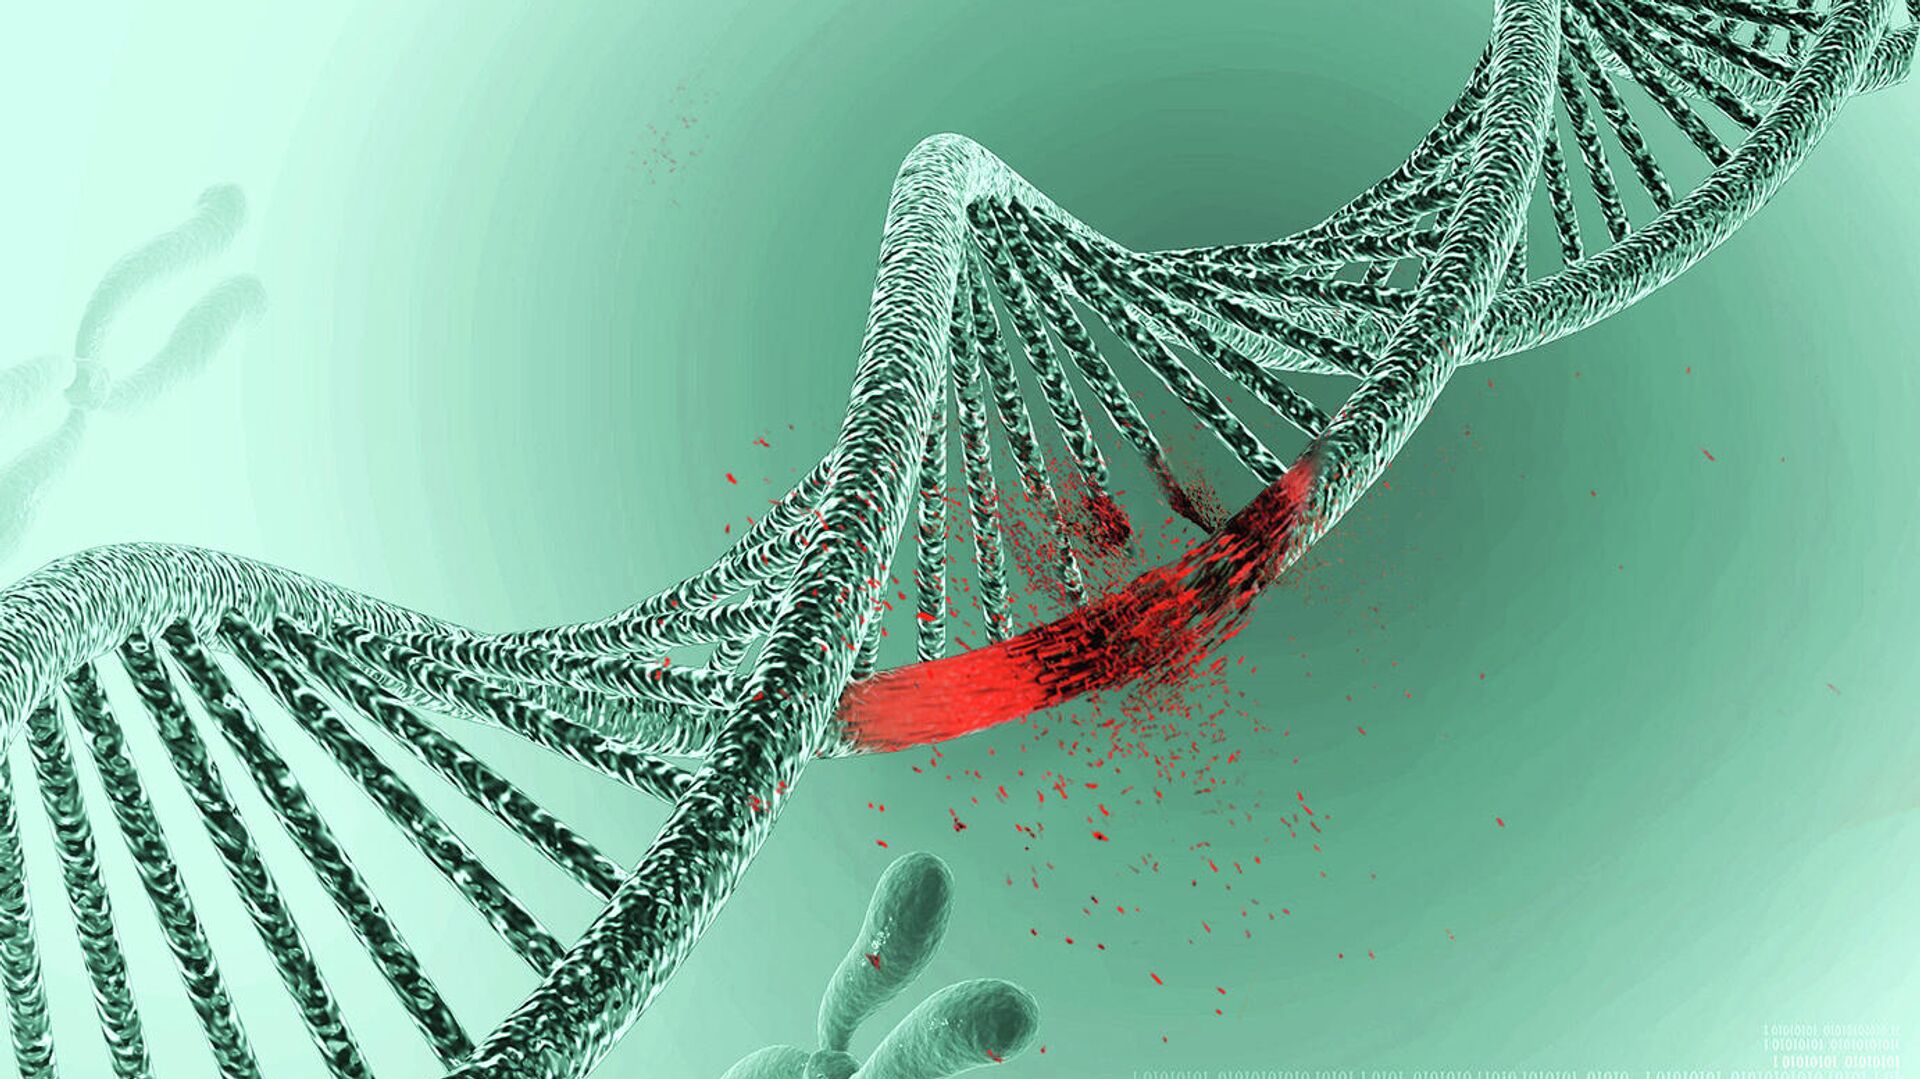 Реферат: Новейшие генные структуры и их анализ